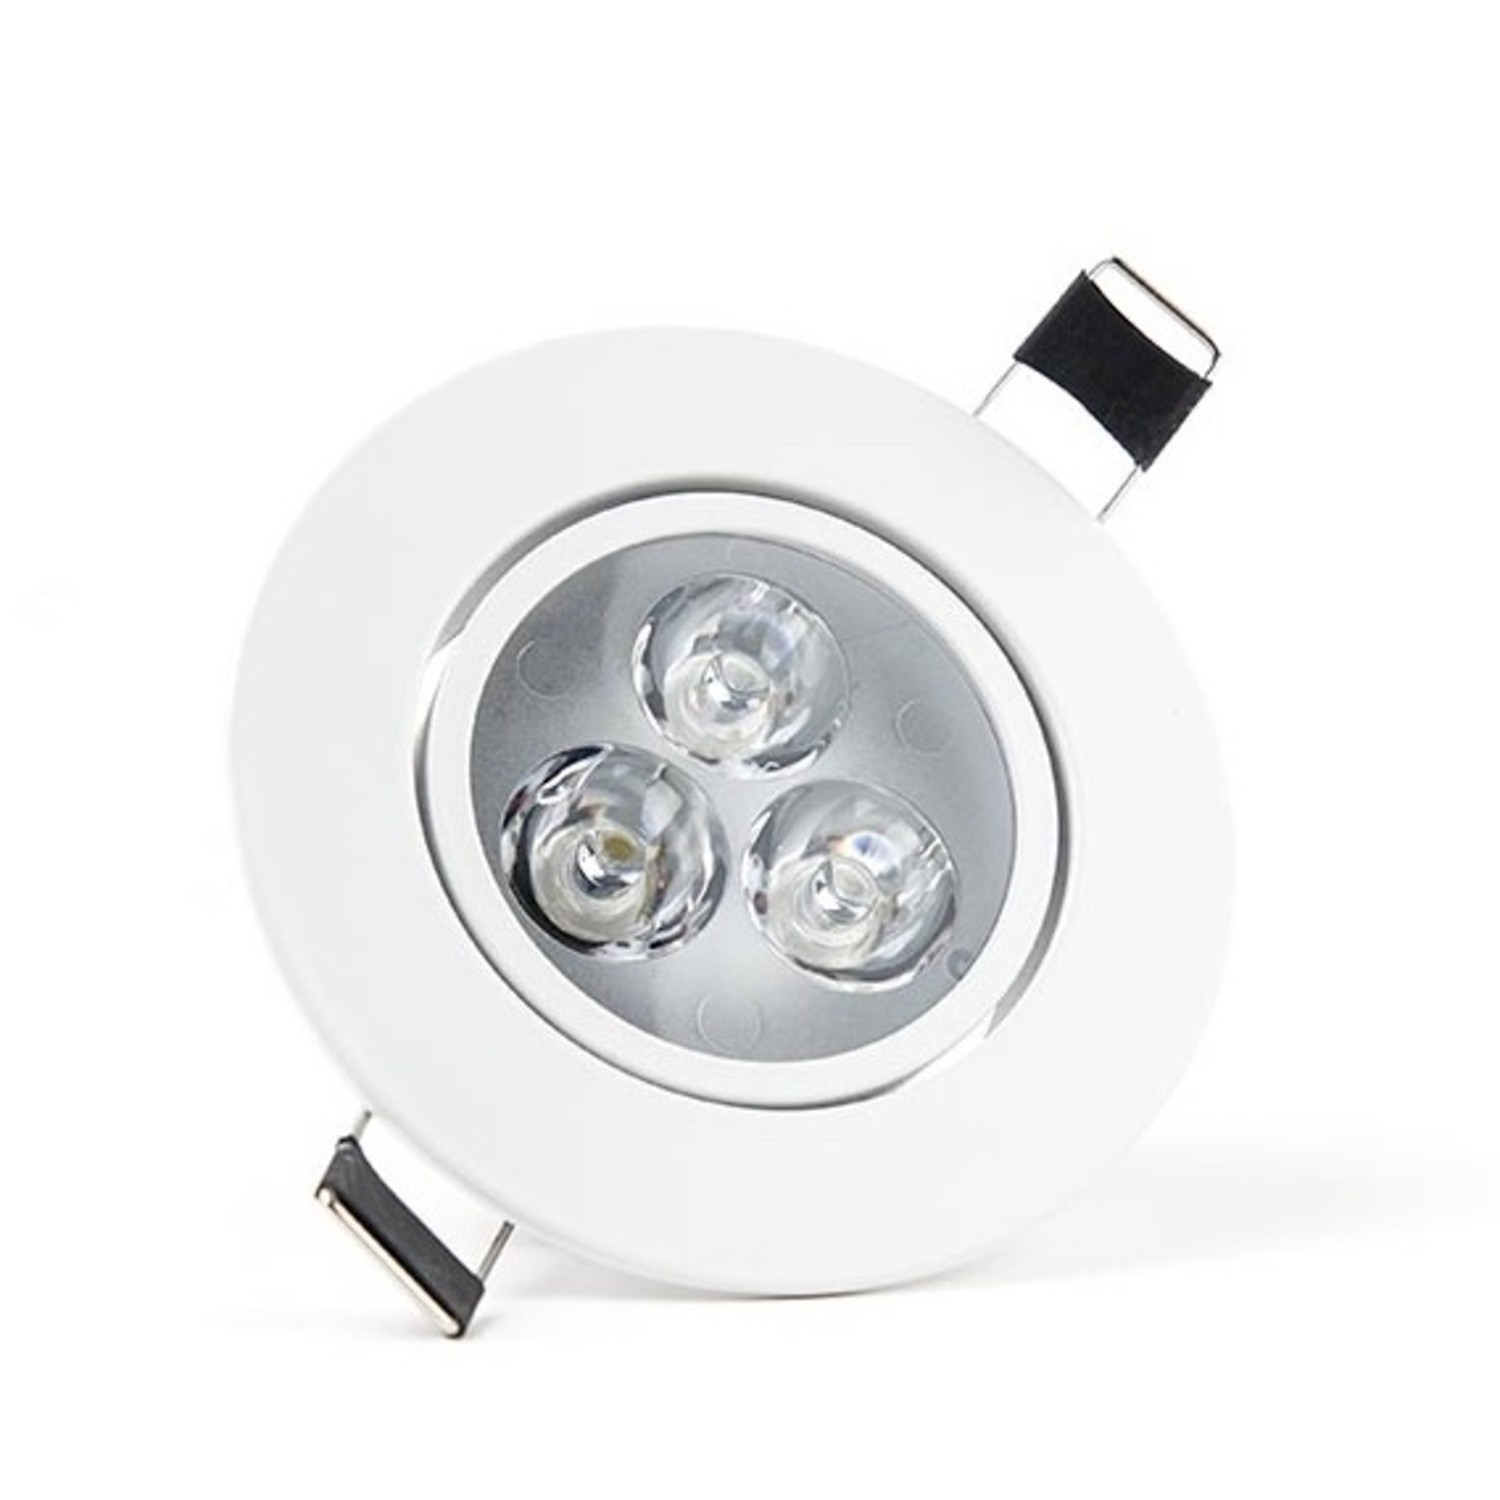 LED inbouwspot Dimbaar - 3W 25W 2700K warm wit licht - Ledlichtdiscounter.nl